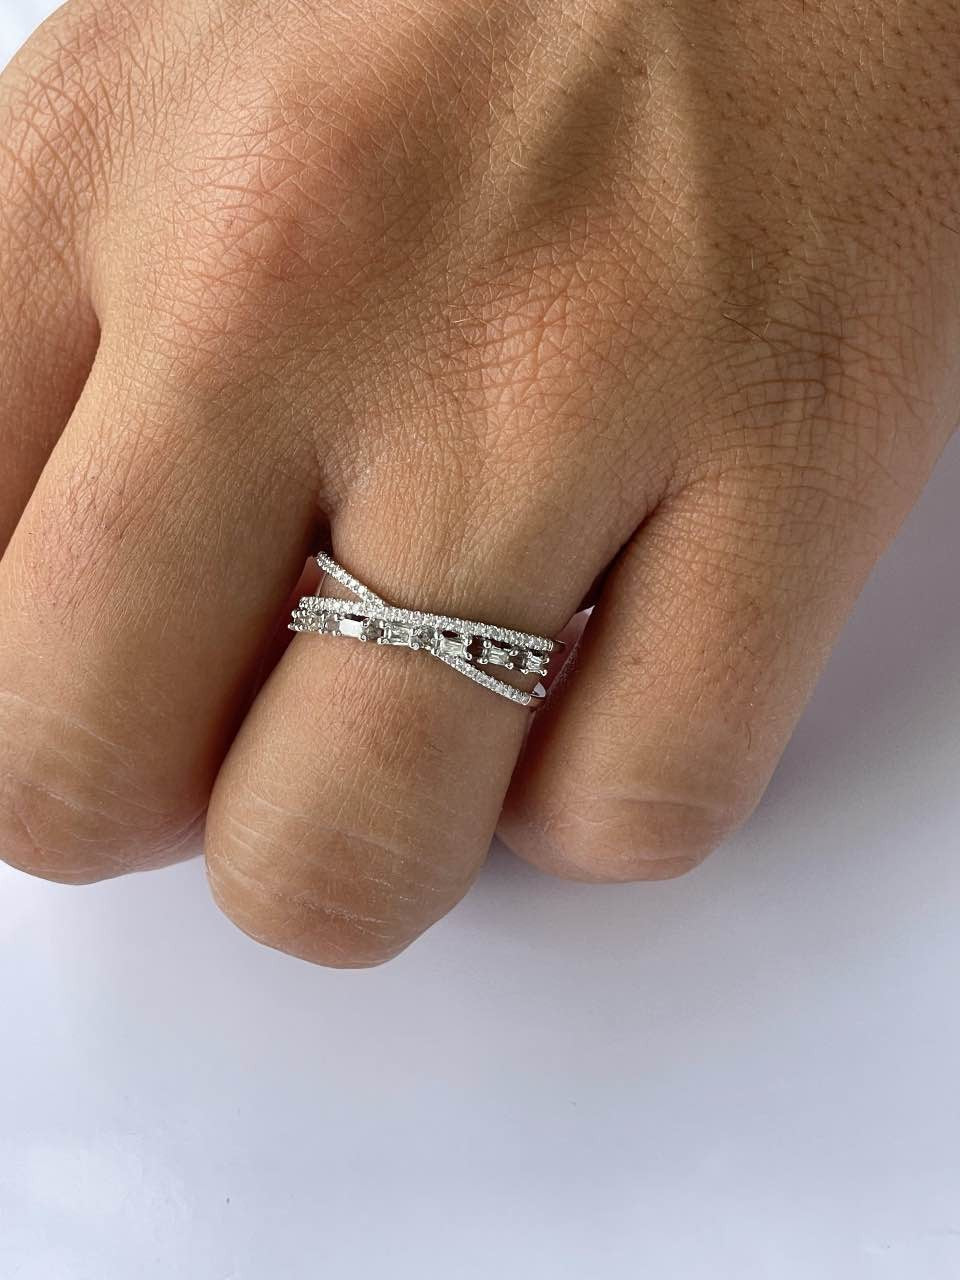 LAJAS anillo de oro blanco con diamantes - Roman Joyero